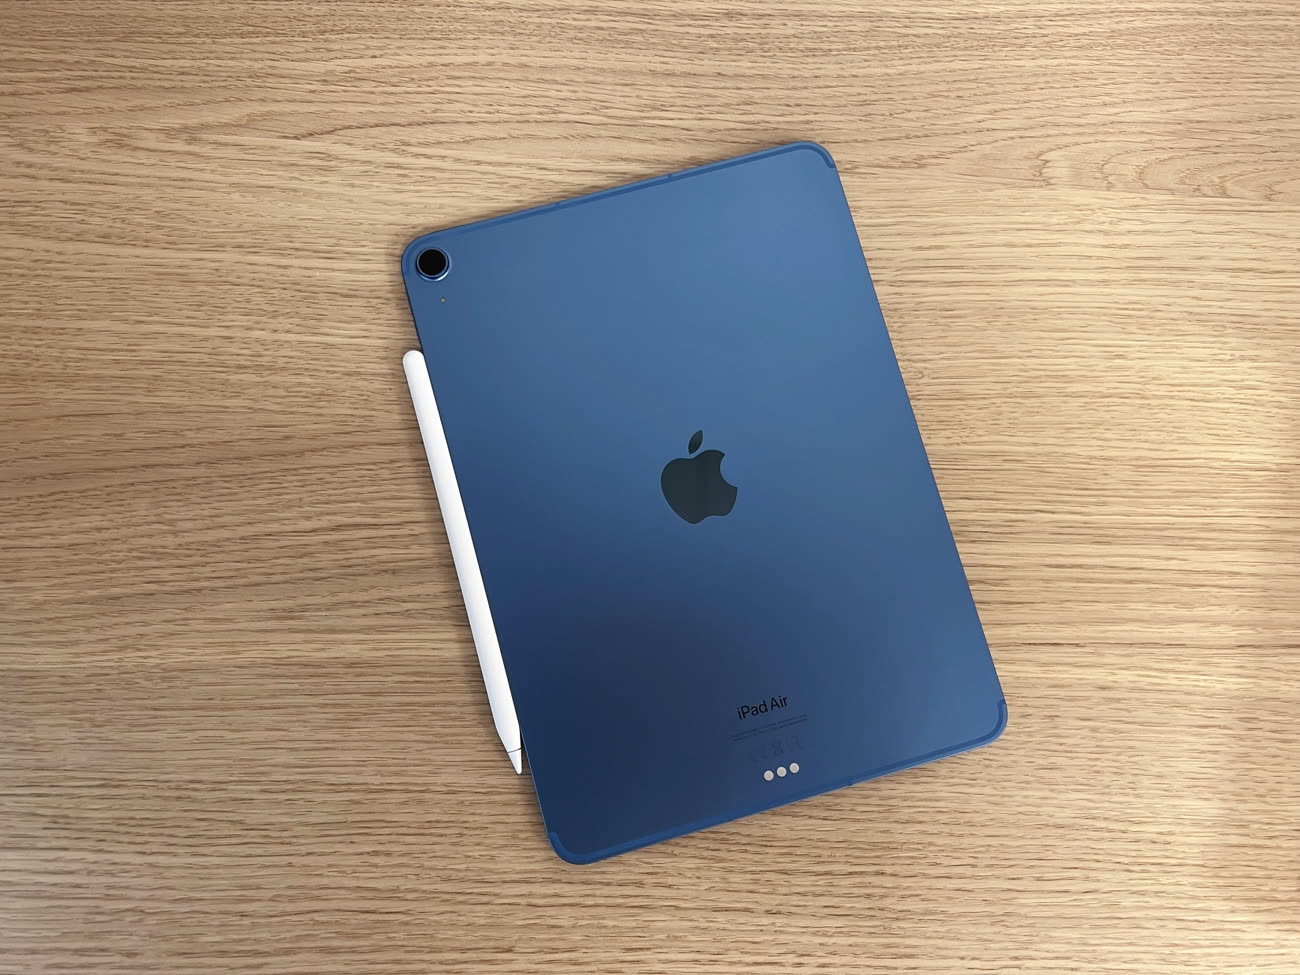 Premier aperçu de l'iPad Air 5 et de son nouveau coloris bleu